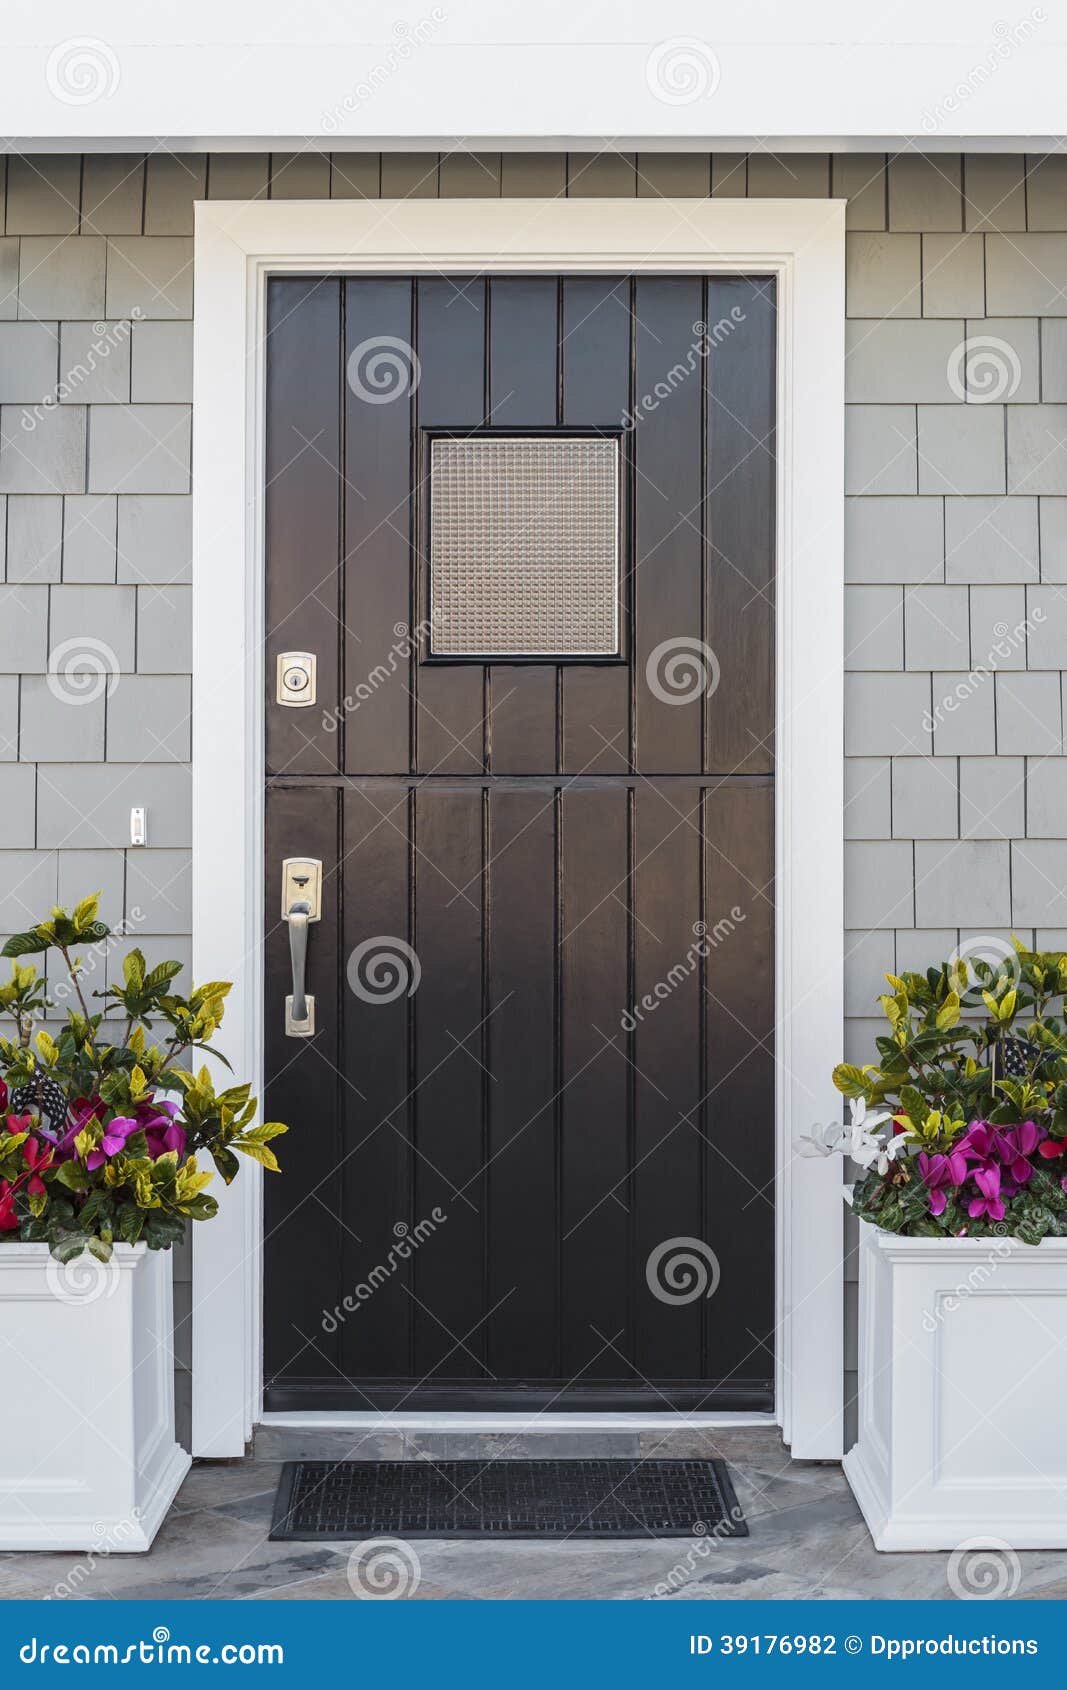 detail of black front door to home